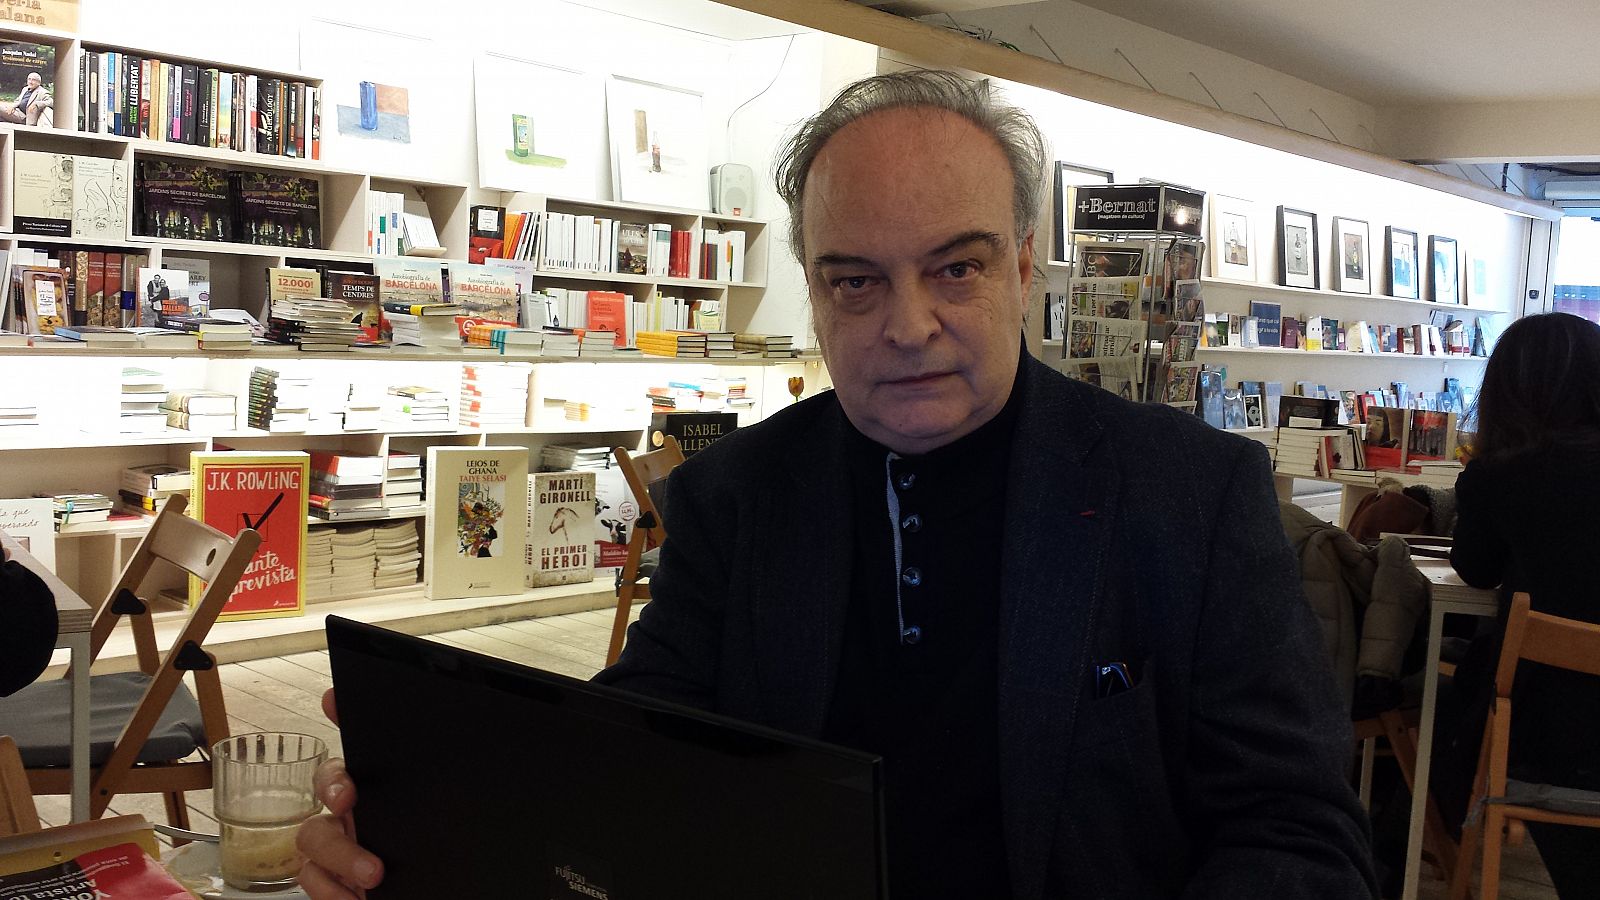  El escritor Enrique Vila-Matas, durante su entrevista para RTVE.es en la librería  +bernat de Barcelona